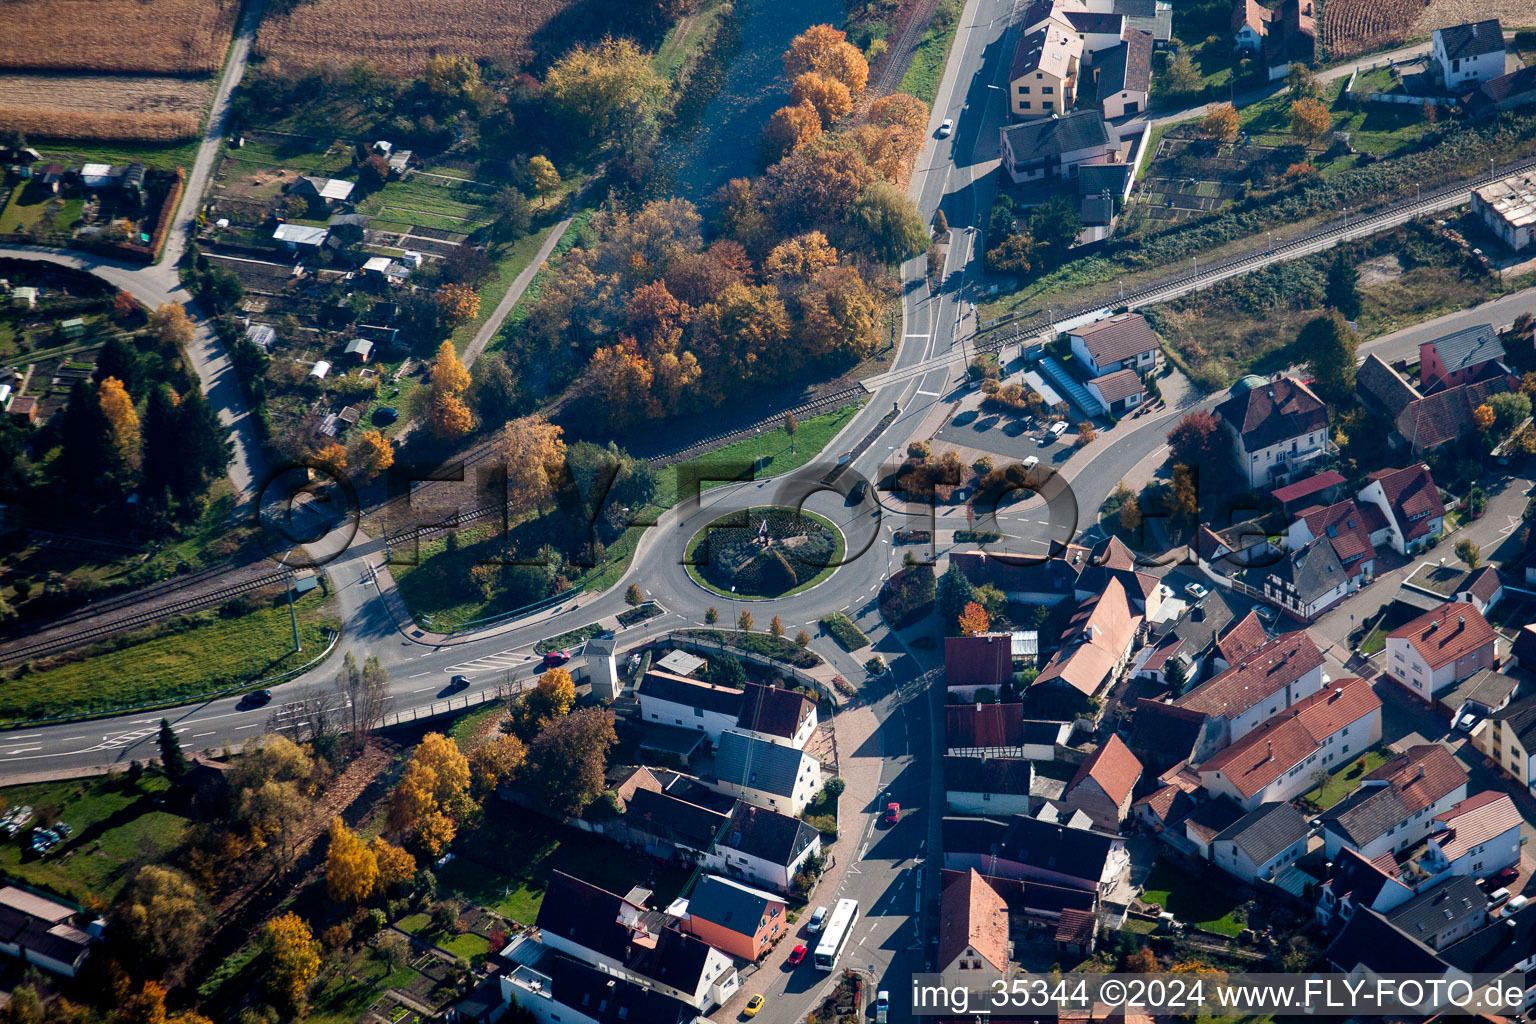 Vue aérienne de Rond-point en direction de Wörth à Hagenbach dans le département Rhénanie-Palatinat, Allemagne